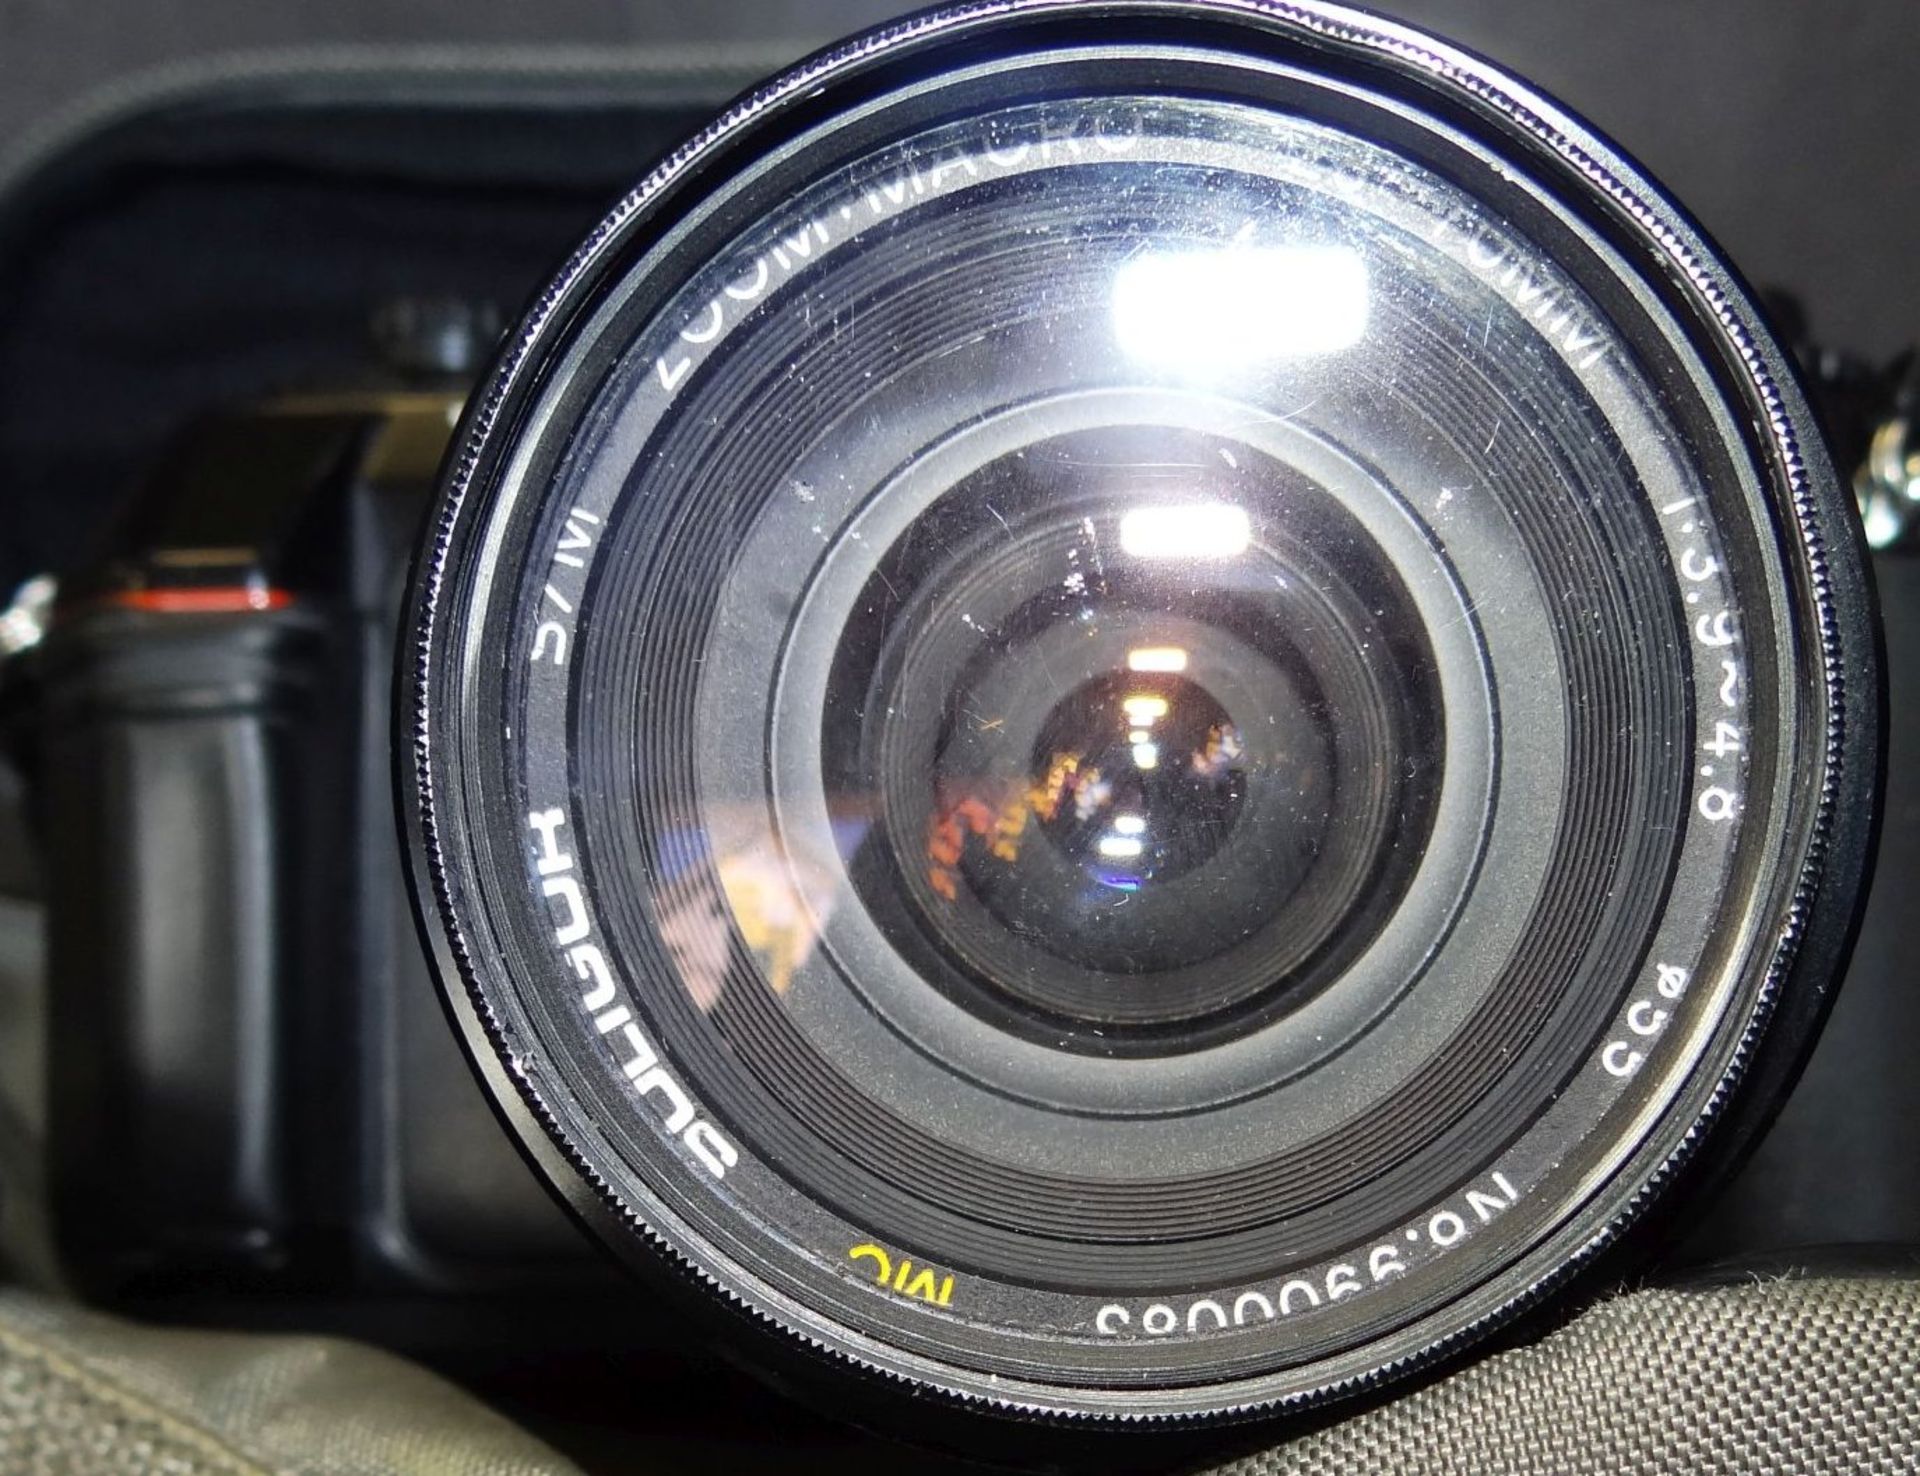 Fotoapparat NIKON F-301 mit Tasche, eine Skalenanzeige lose - Bild 4 aus 4